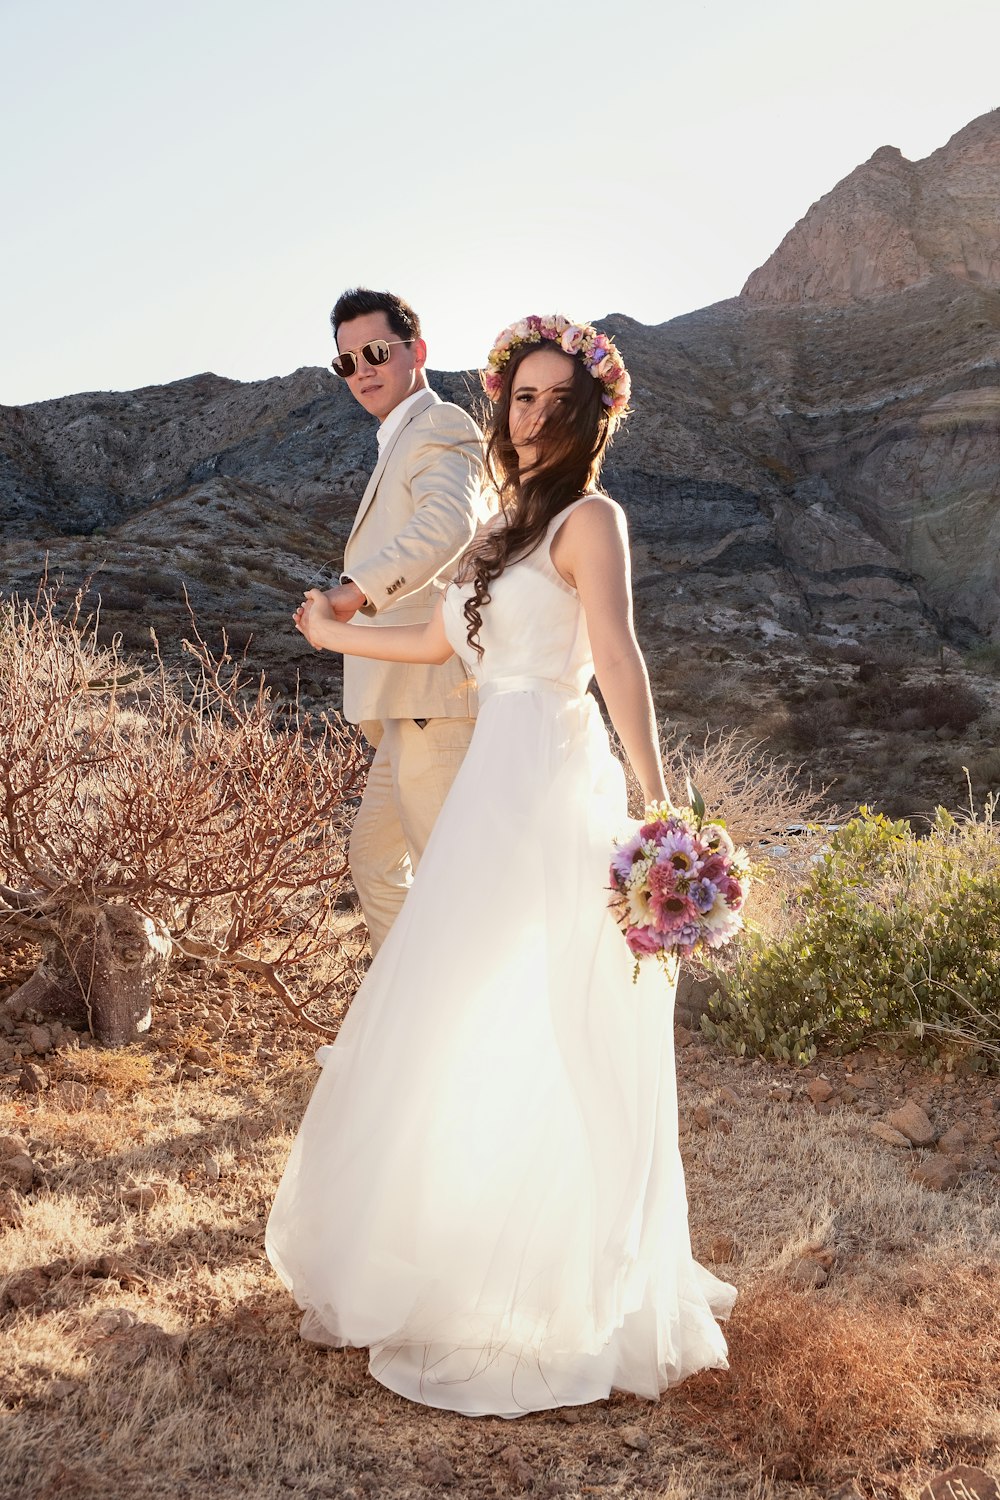 Mann und Frau im Brautkleid, tagsüber auf braunem Rasen stehen